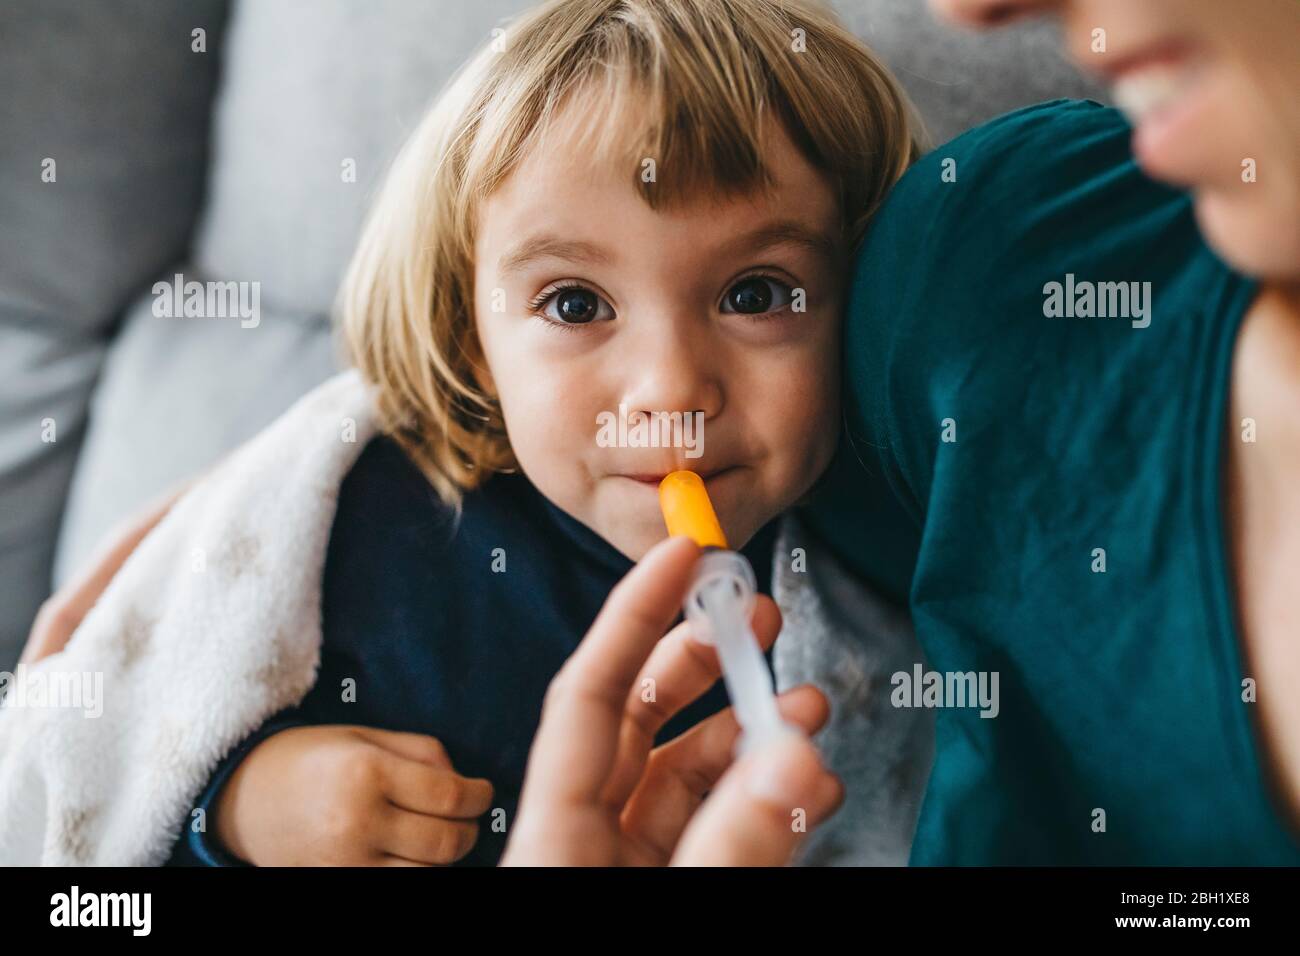 Portrait de la petite fille malade assise sur le canapé pendant que la mère donne son médicament Banque D'Images